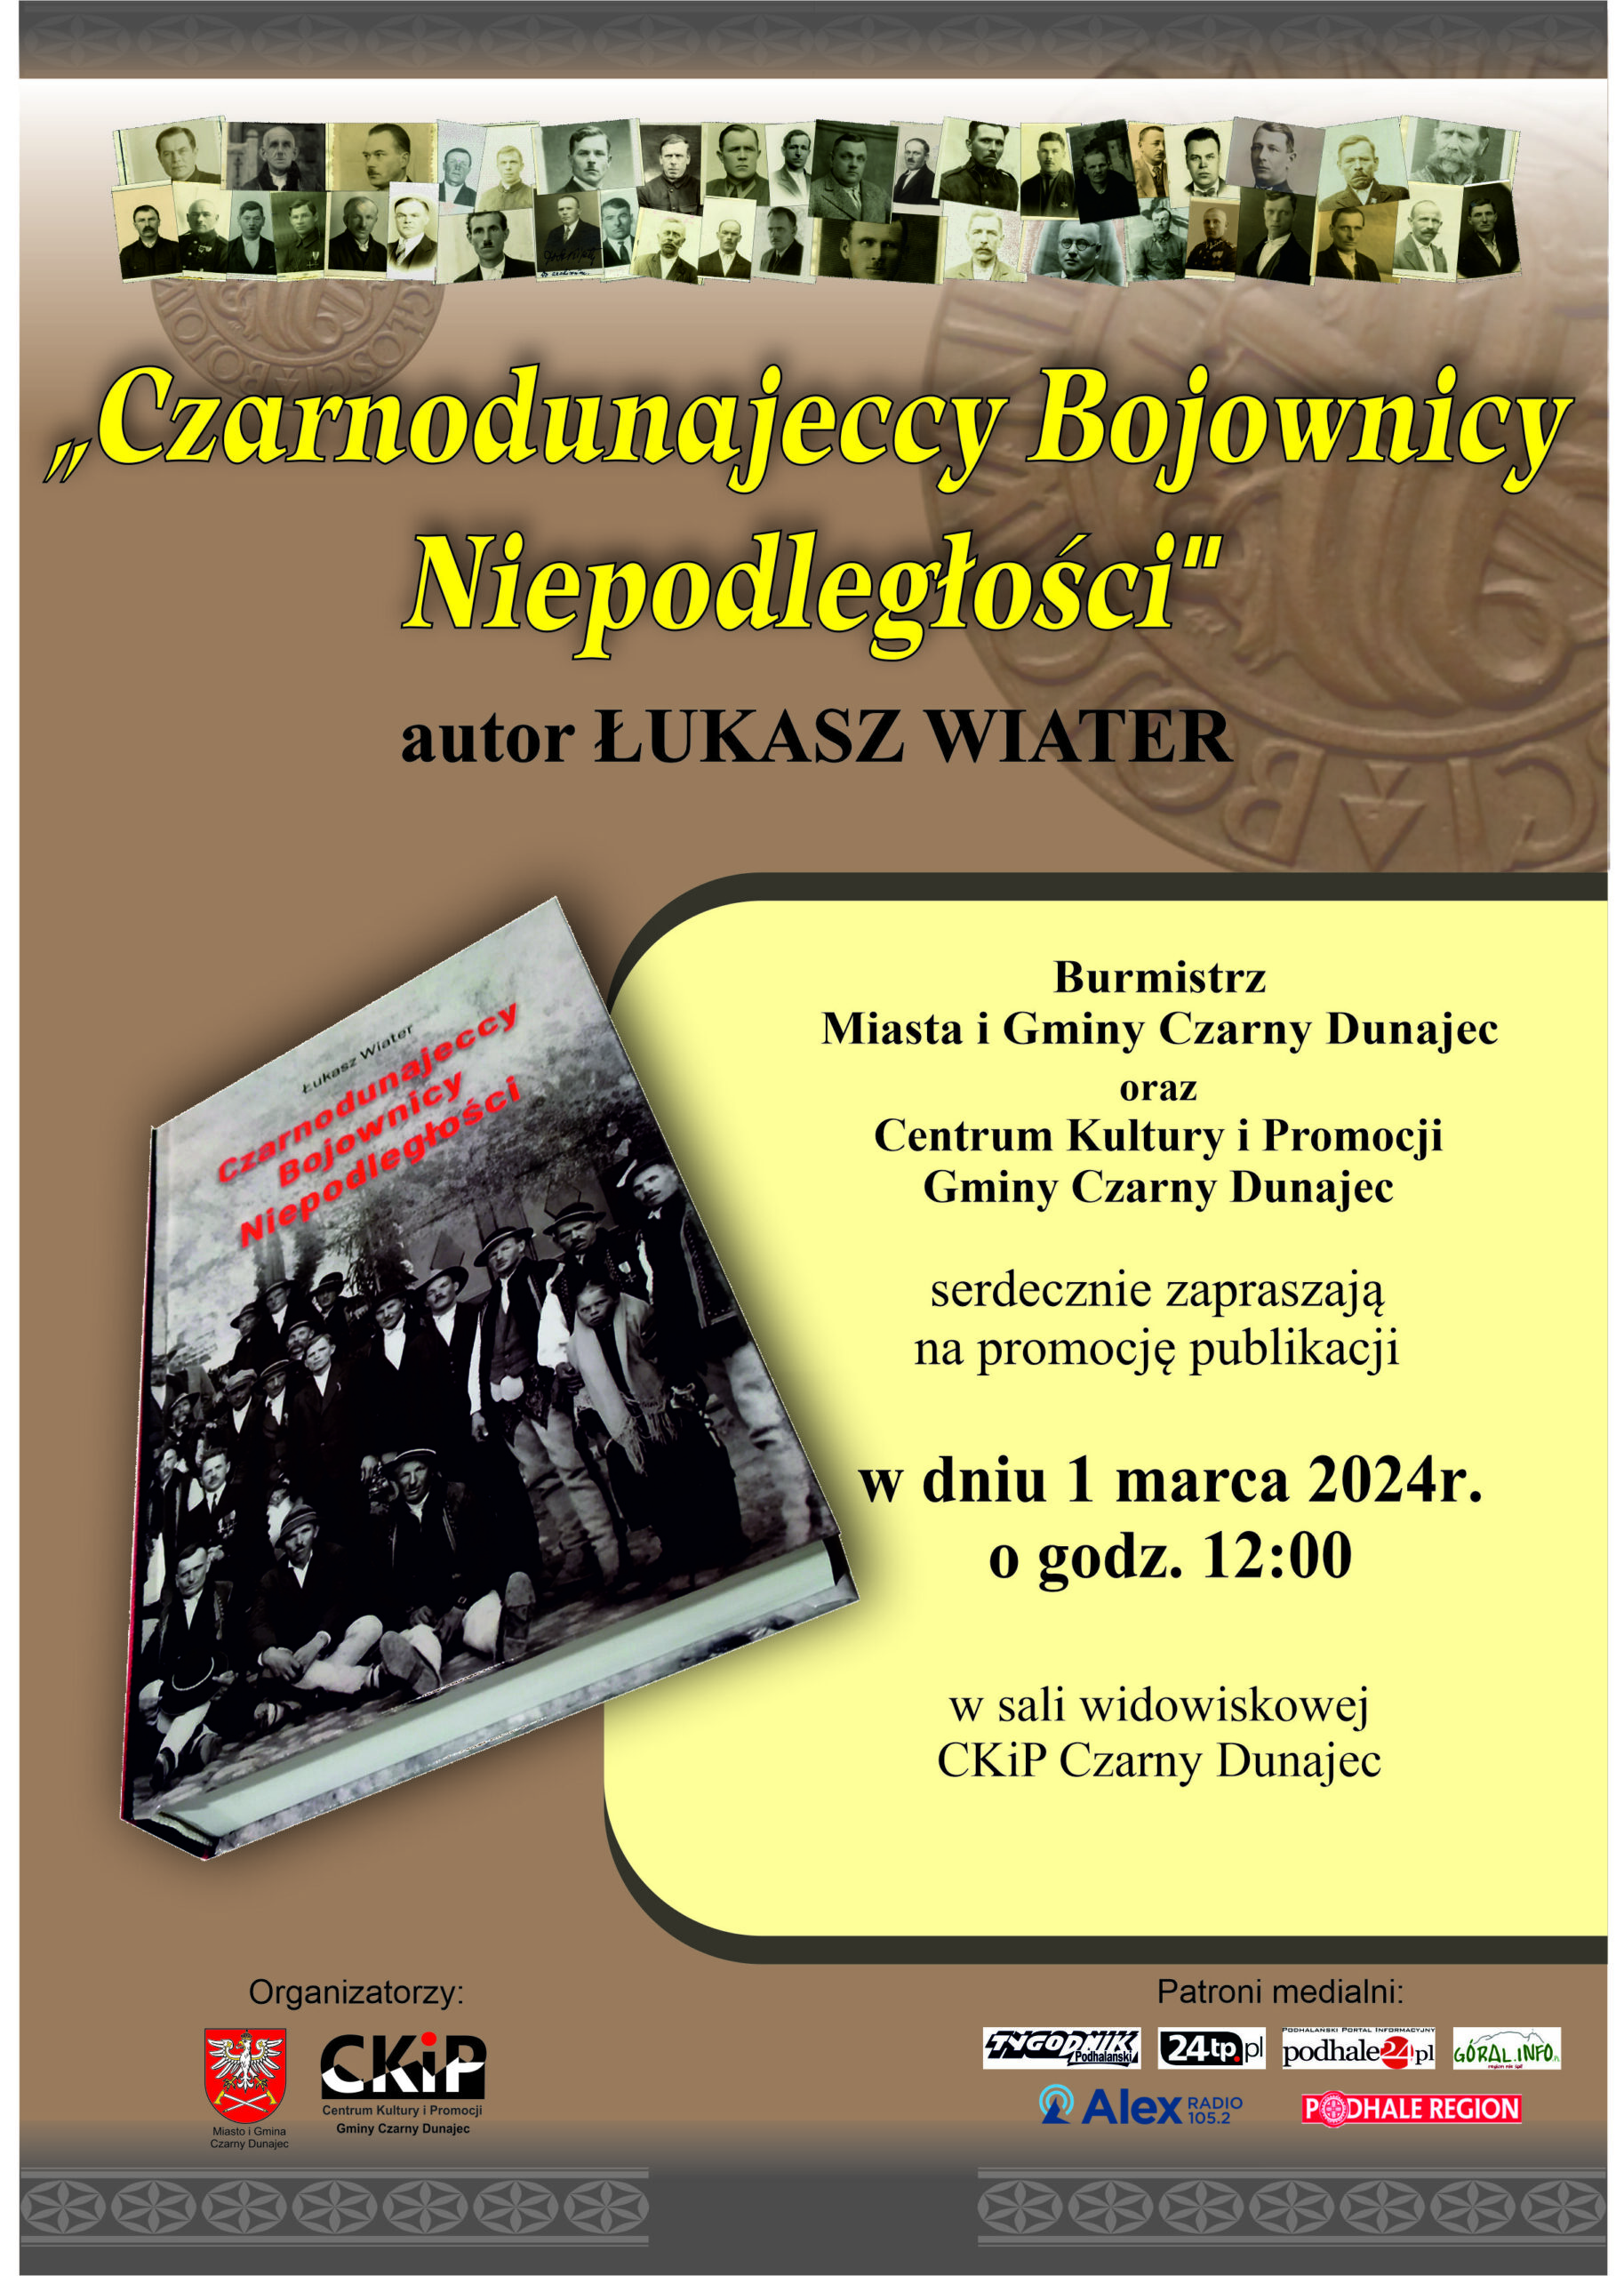 Promocja książki „Czarnodunajeccy Bojownicy Niepodległości”